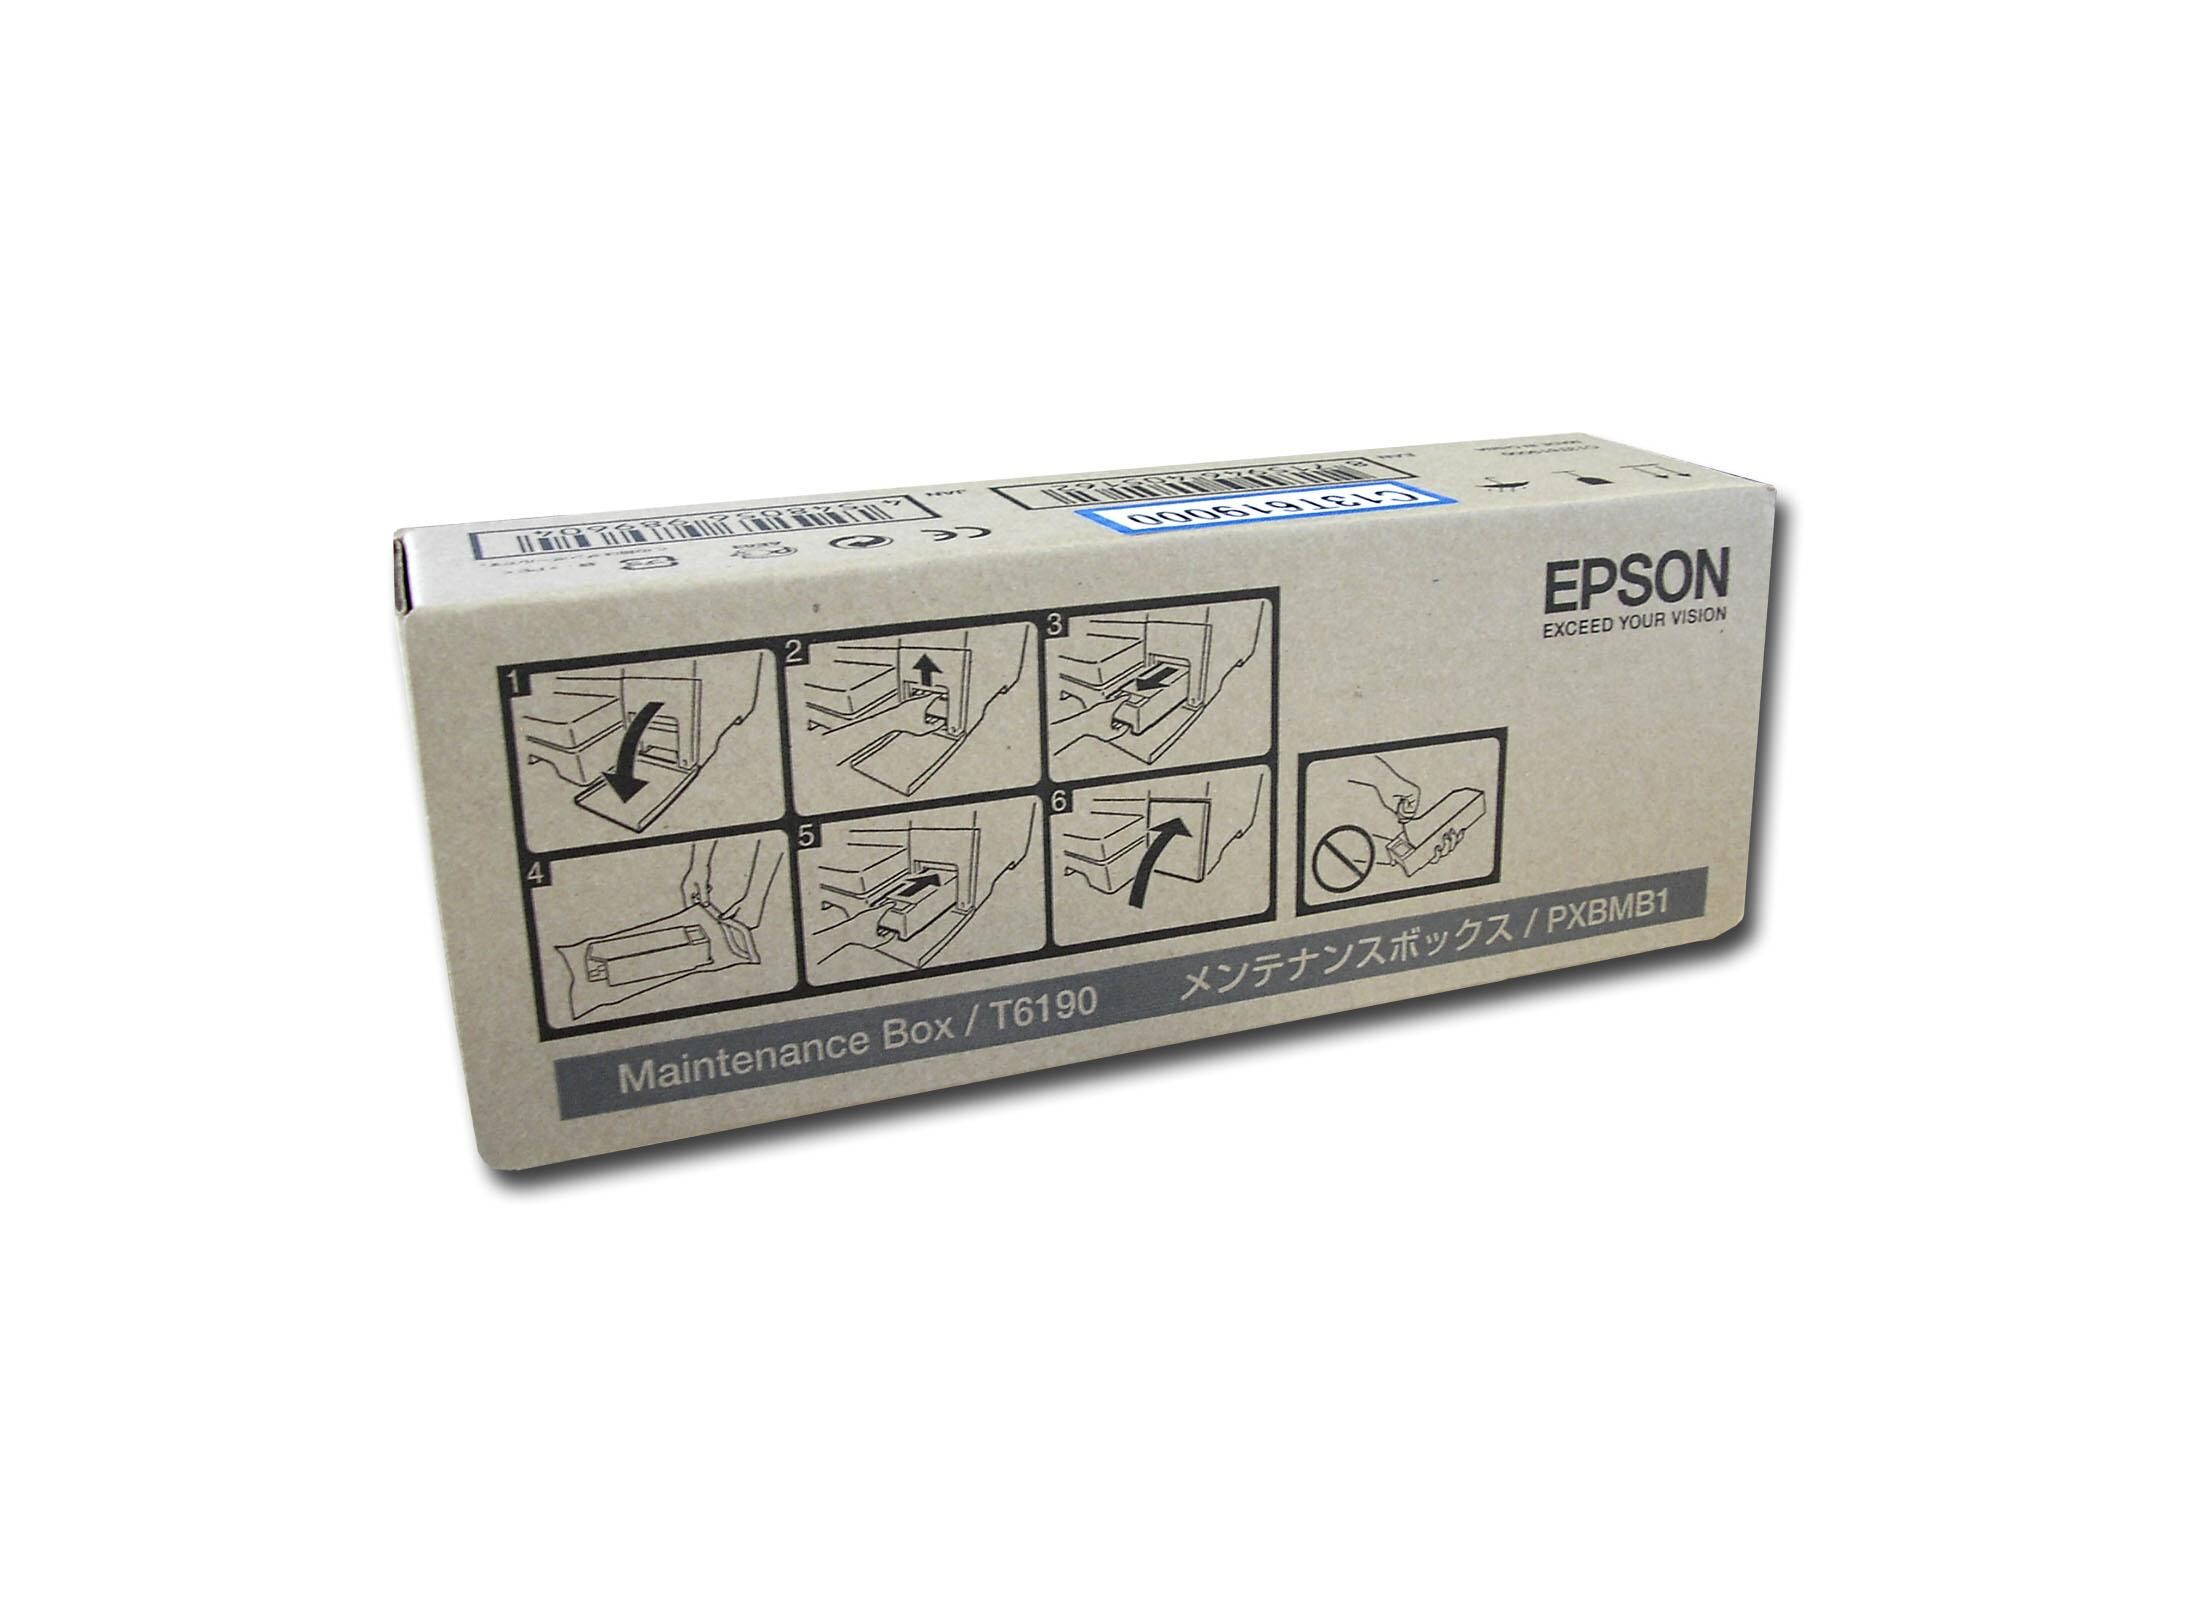 Epson Tanque Manutenção Epson B300/b500 - C13t619000